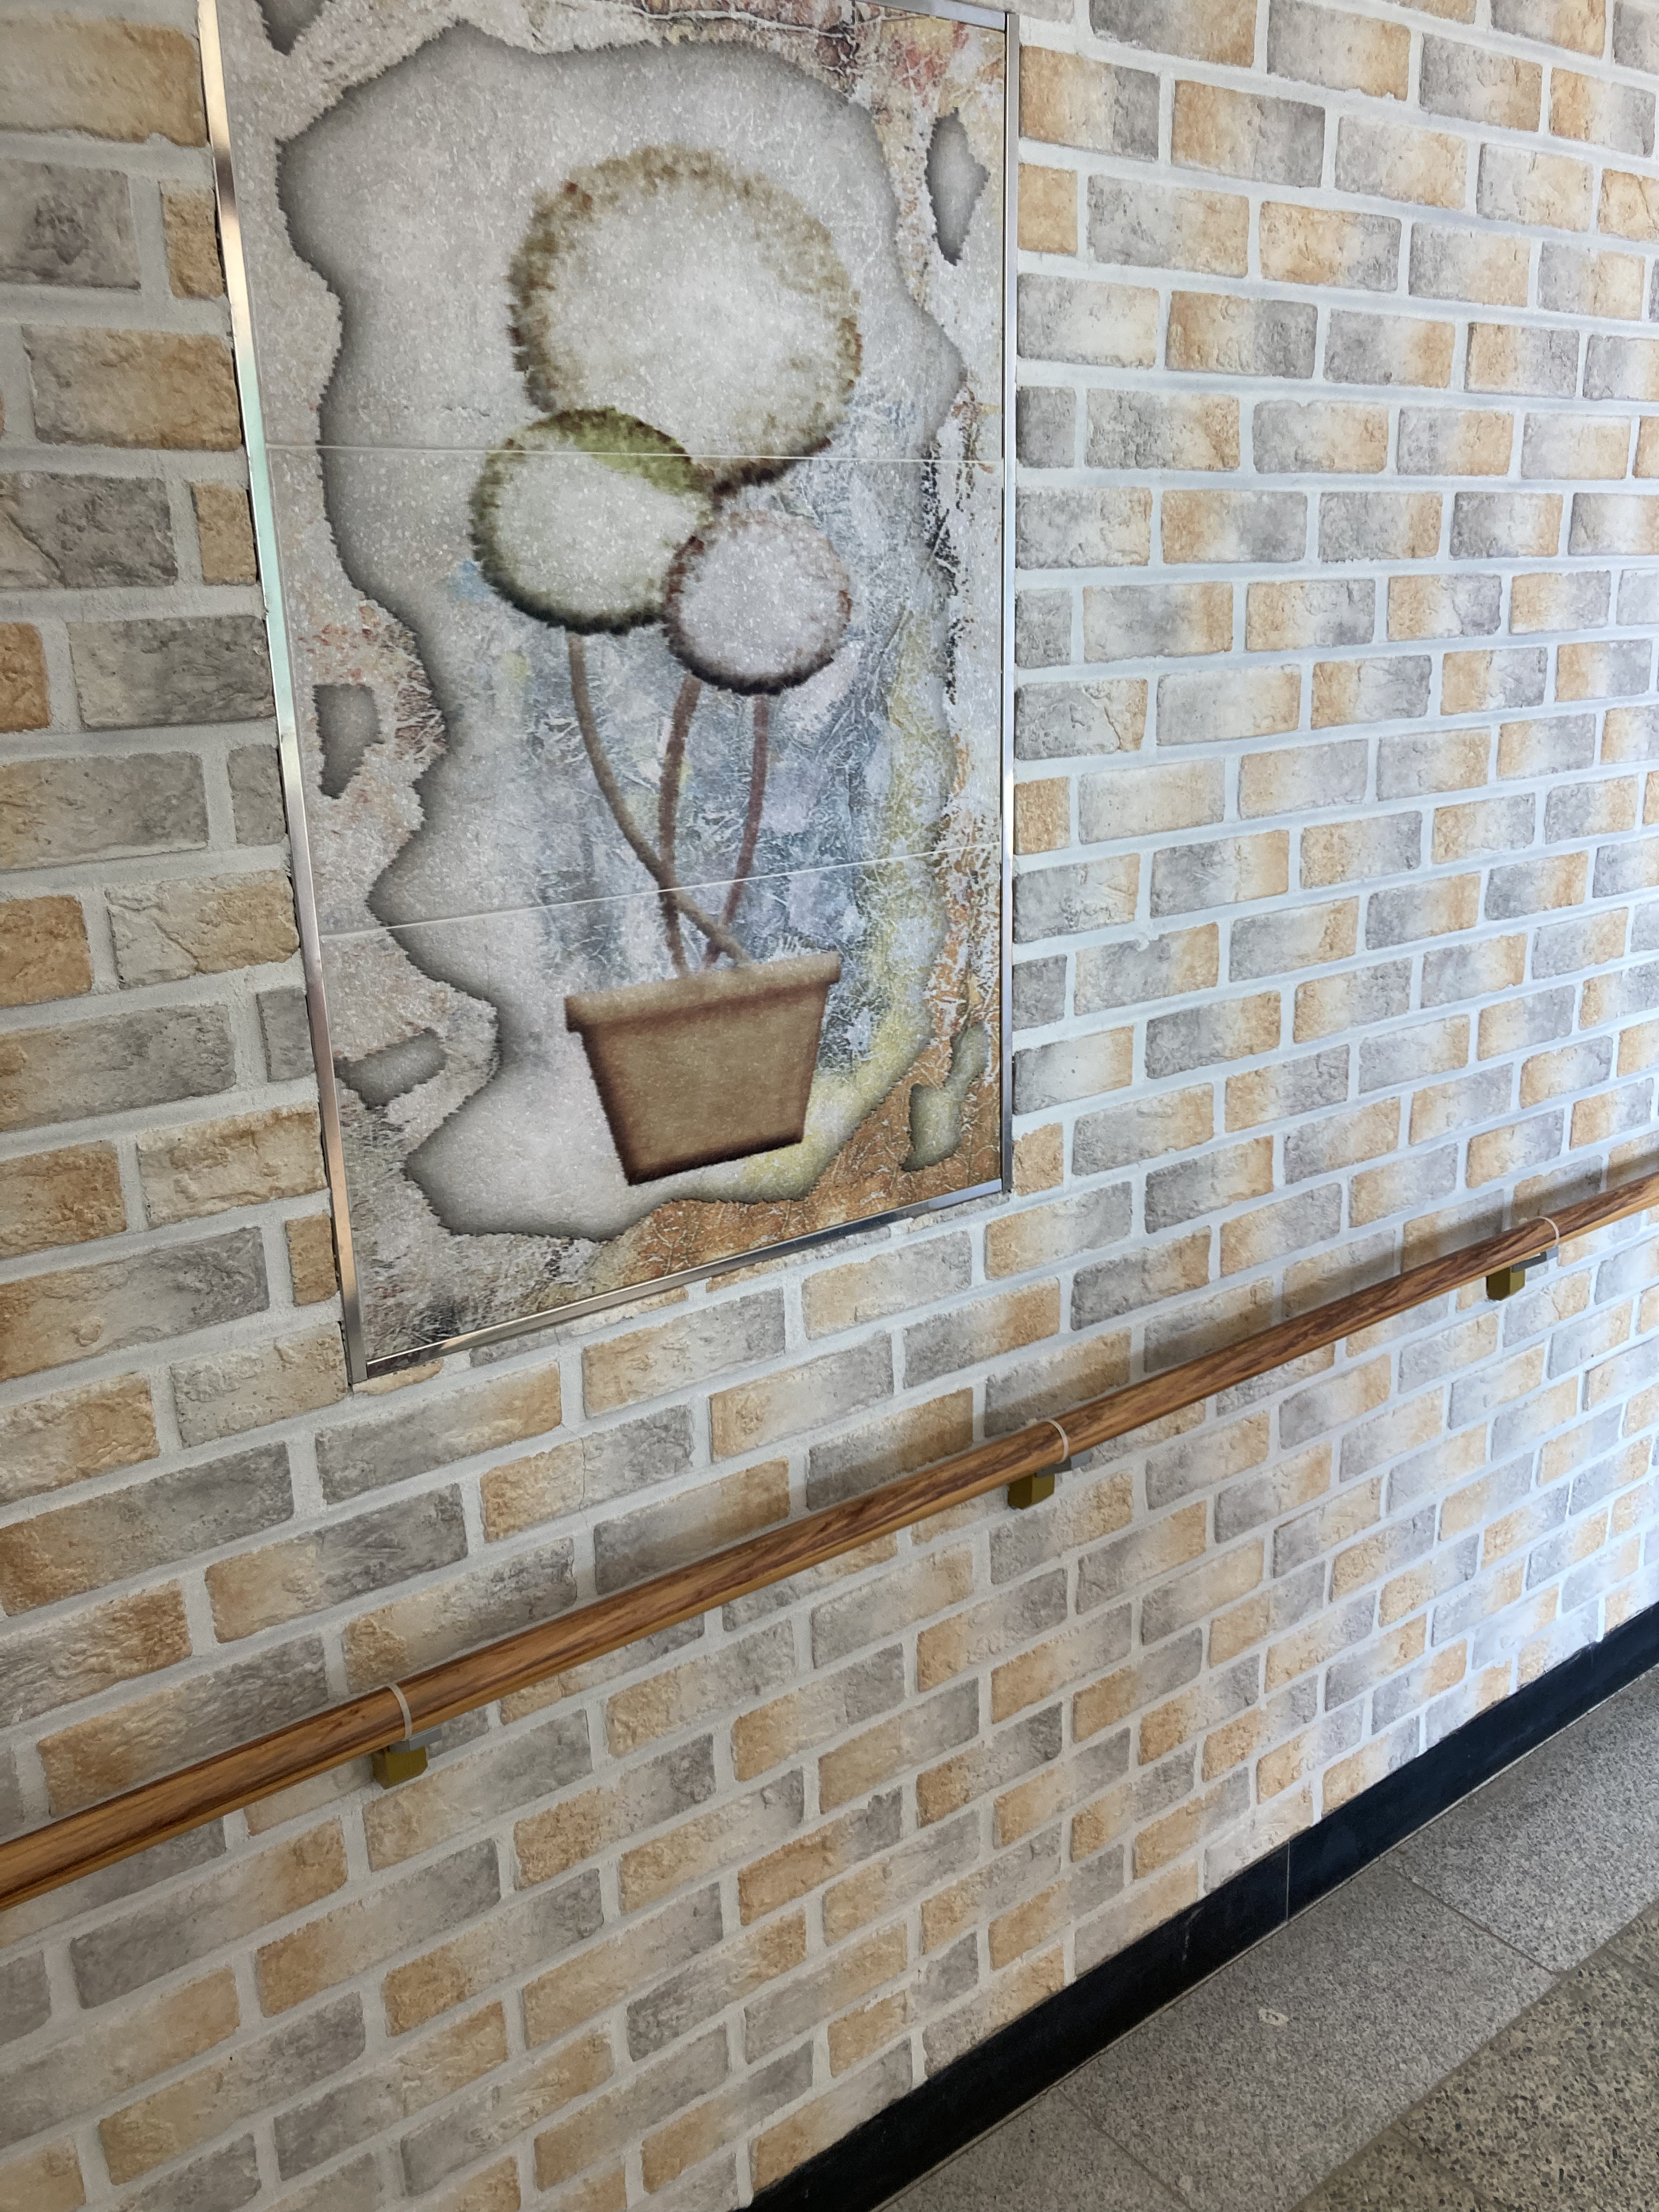 태평여자고등학교 벽면에 걸린 그림.